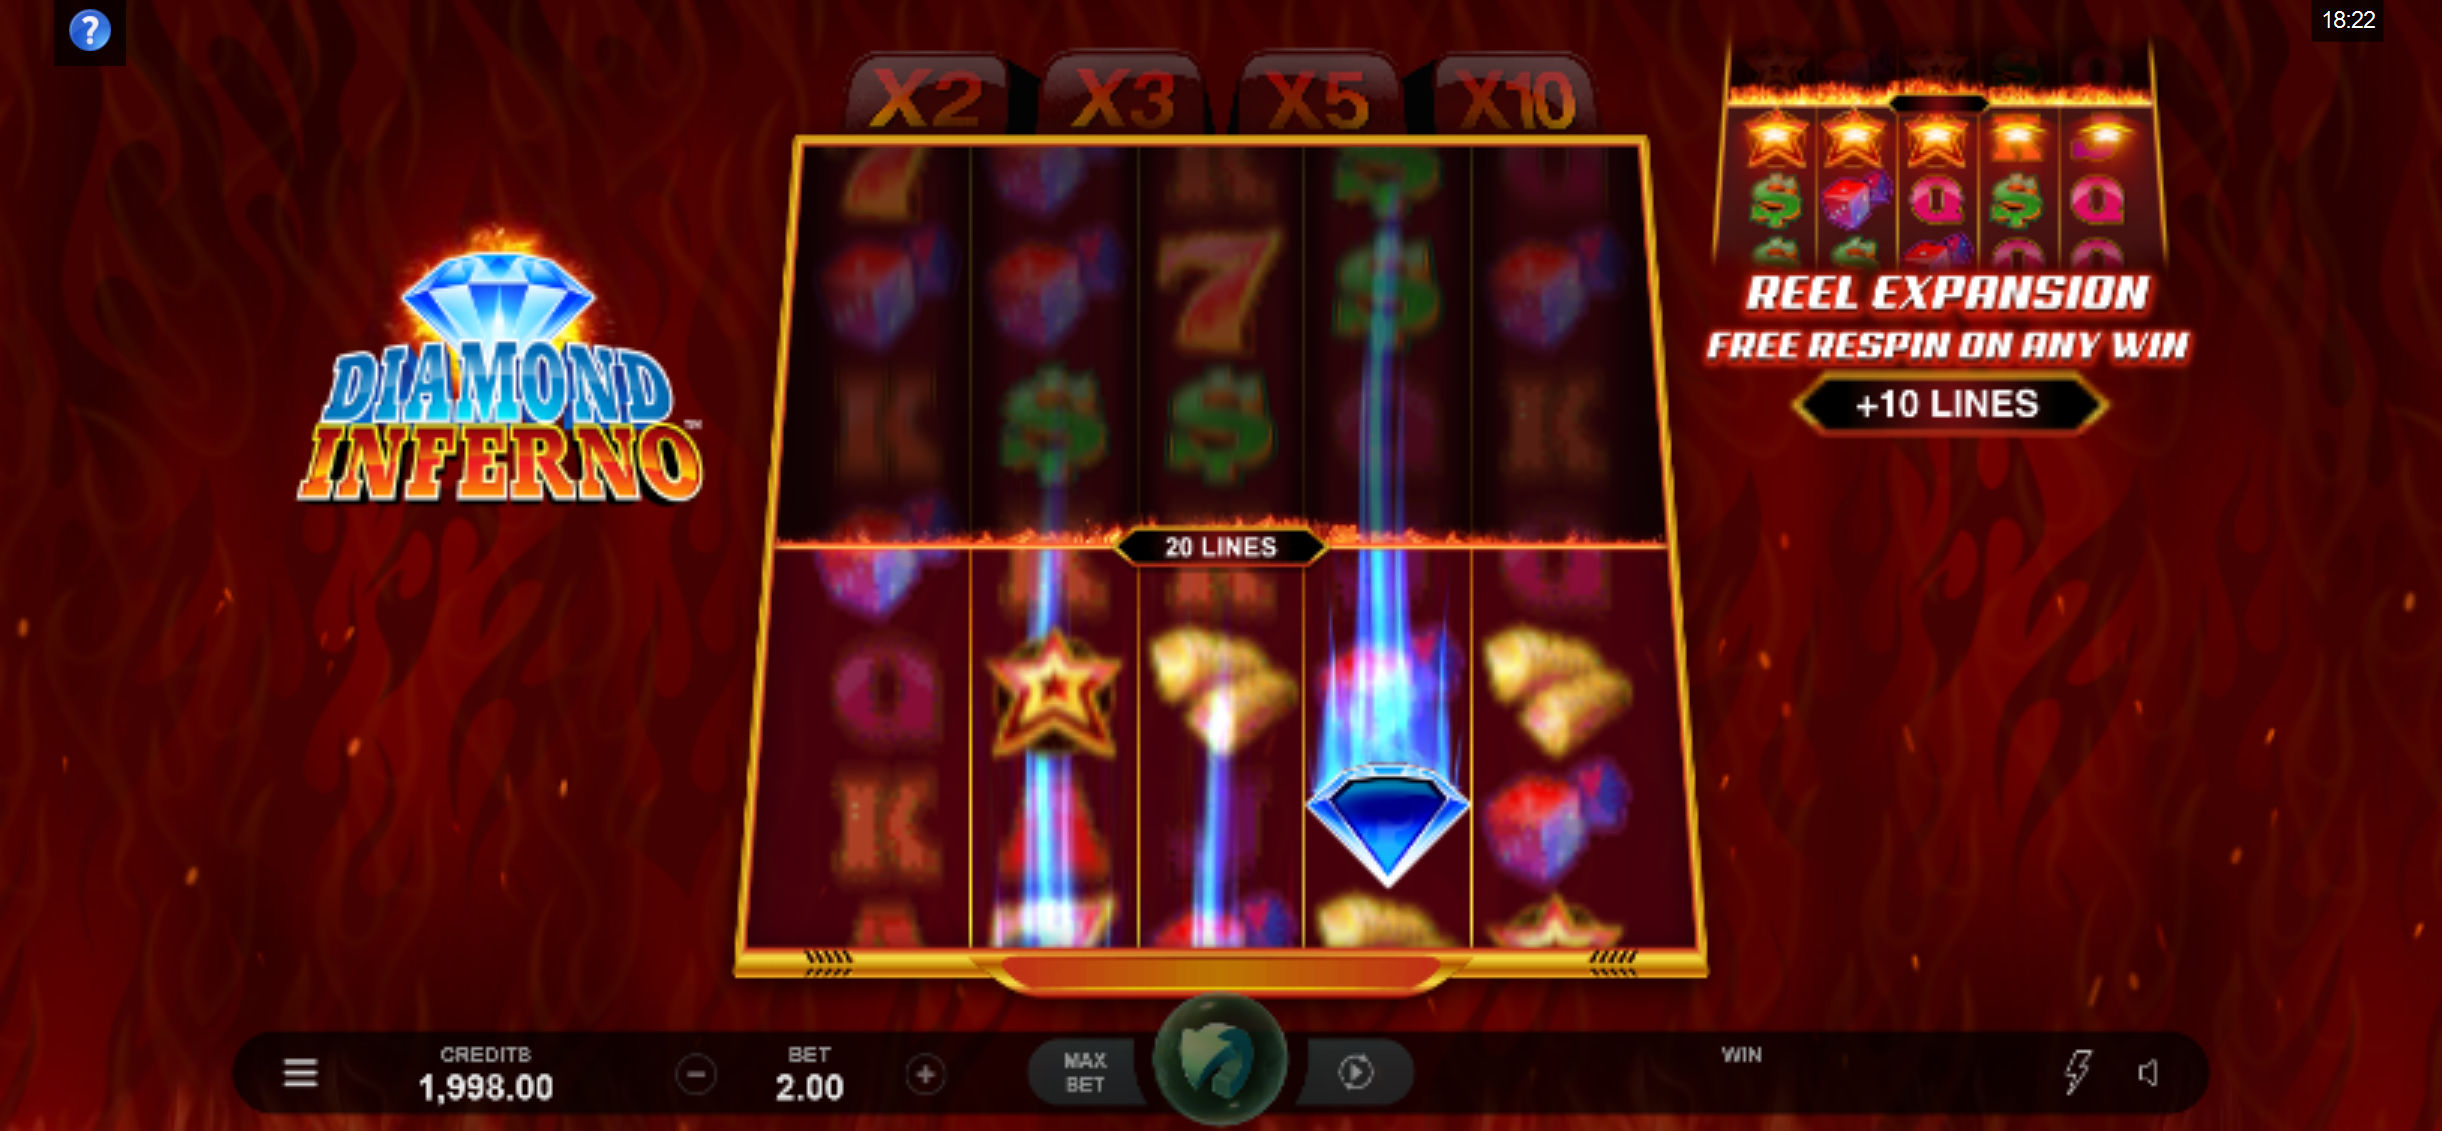 Cadoola Casino Mobile Slot Games Review